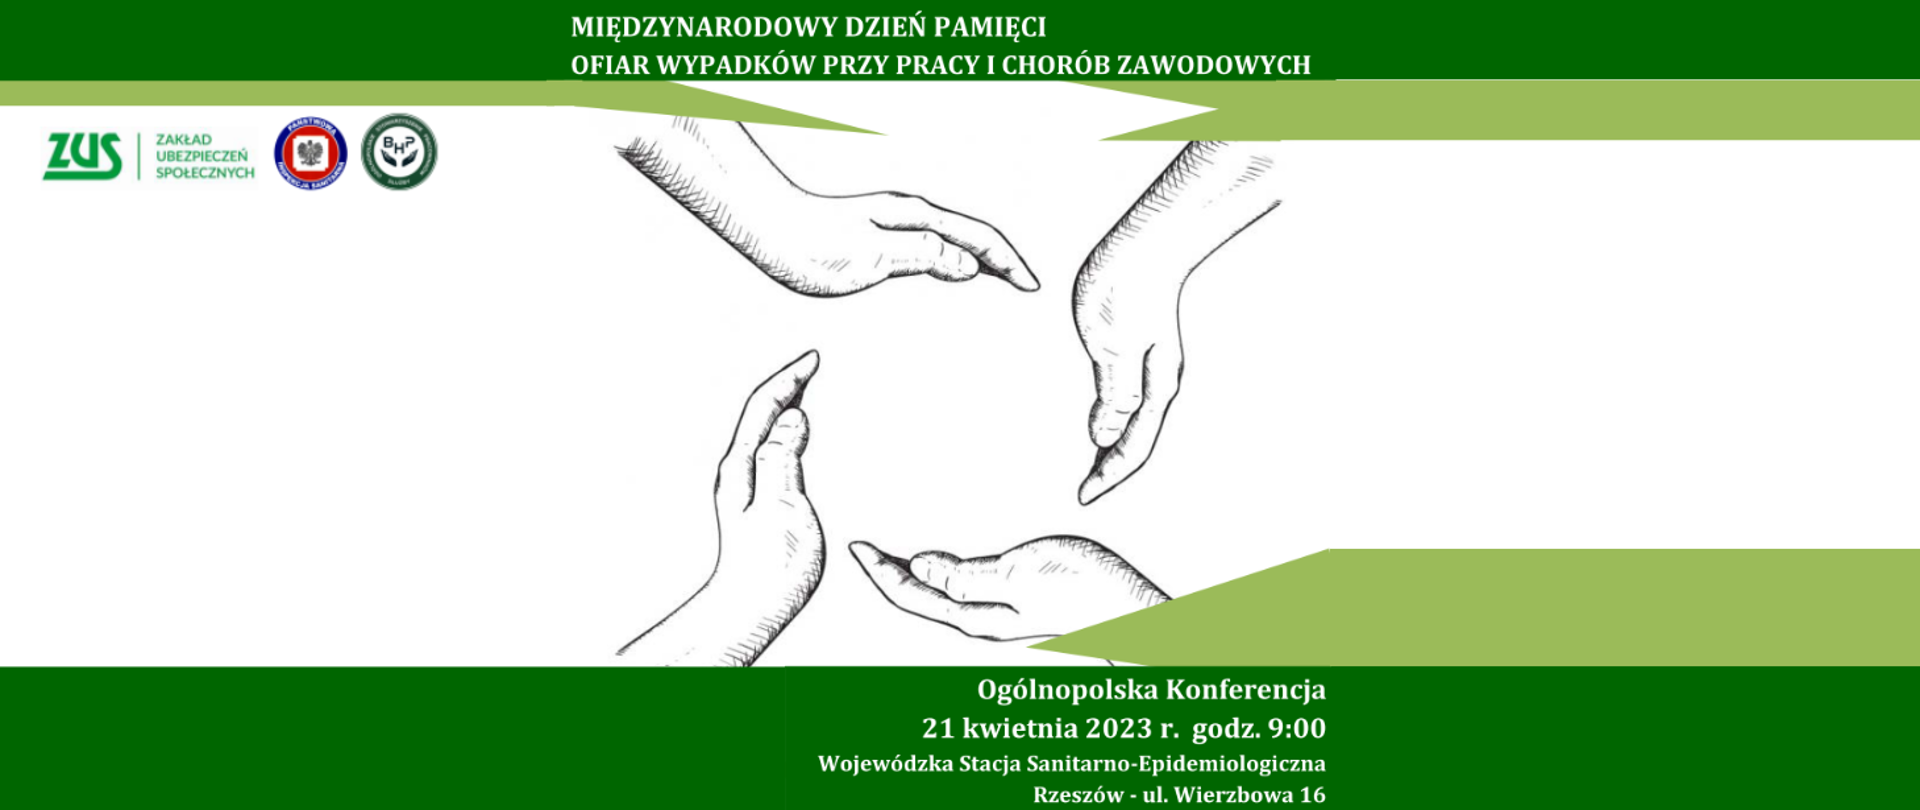 Zaproszenie na Konferencję organizowaną z okazji Międzynarodowego dnia pamięci ofiar wypadków przy pracy i chorób zawodowych.
Konferencja odbędzie się 21 kwietnia 2023 r. o godzinie 9:00 w Wojewódzkiej Stacji Sanitarno-Epidemiologicznej w Rzeszowie.